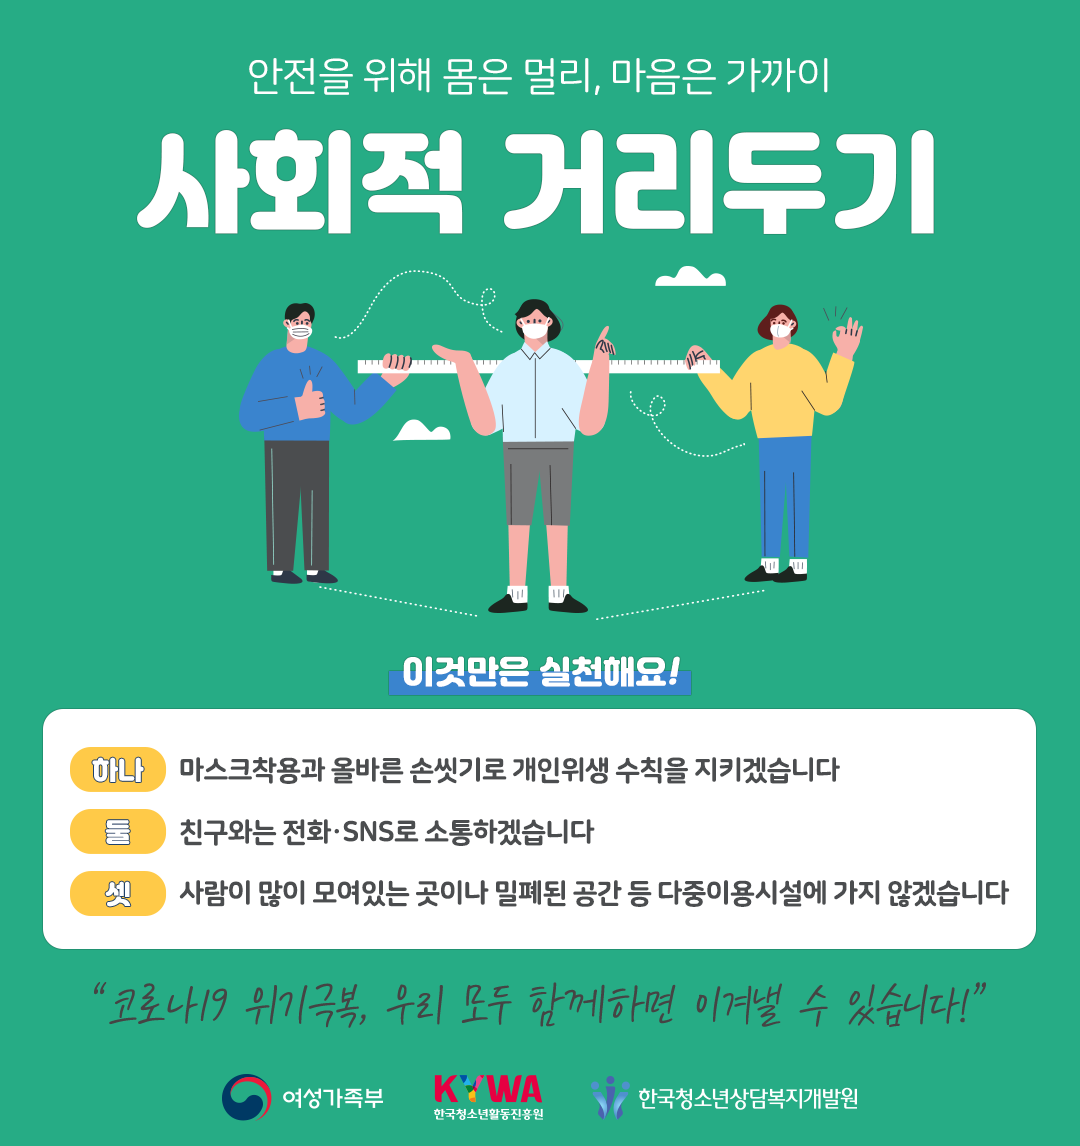 (최종) 사회적거리두기 홍보 포스터.png